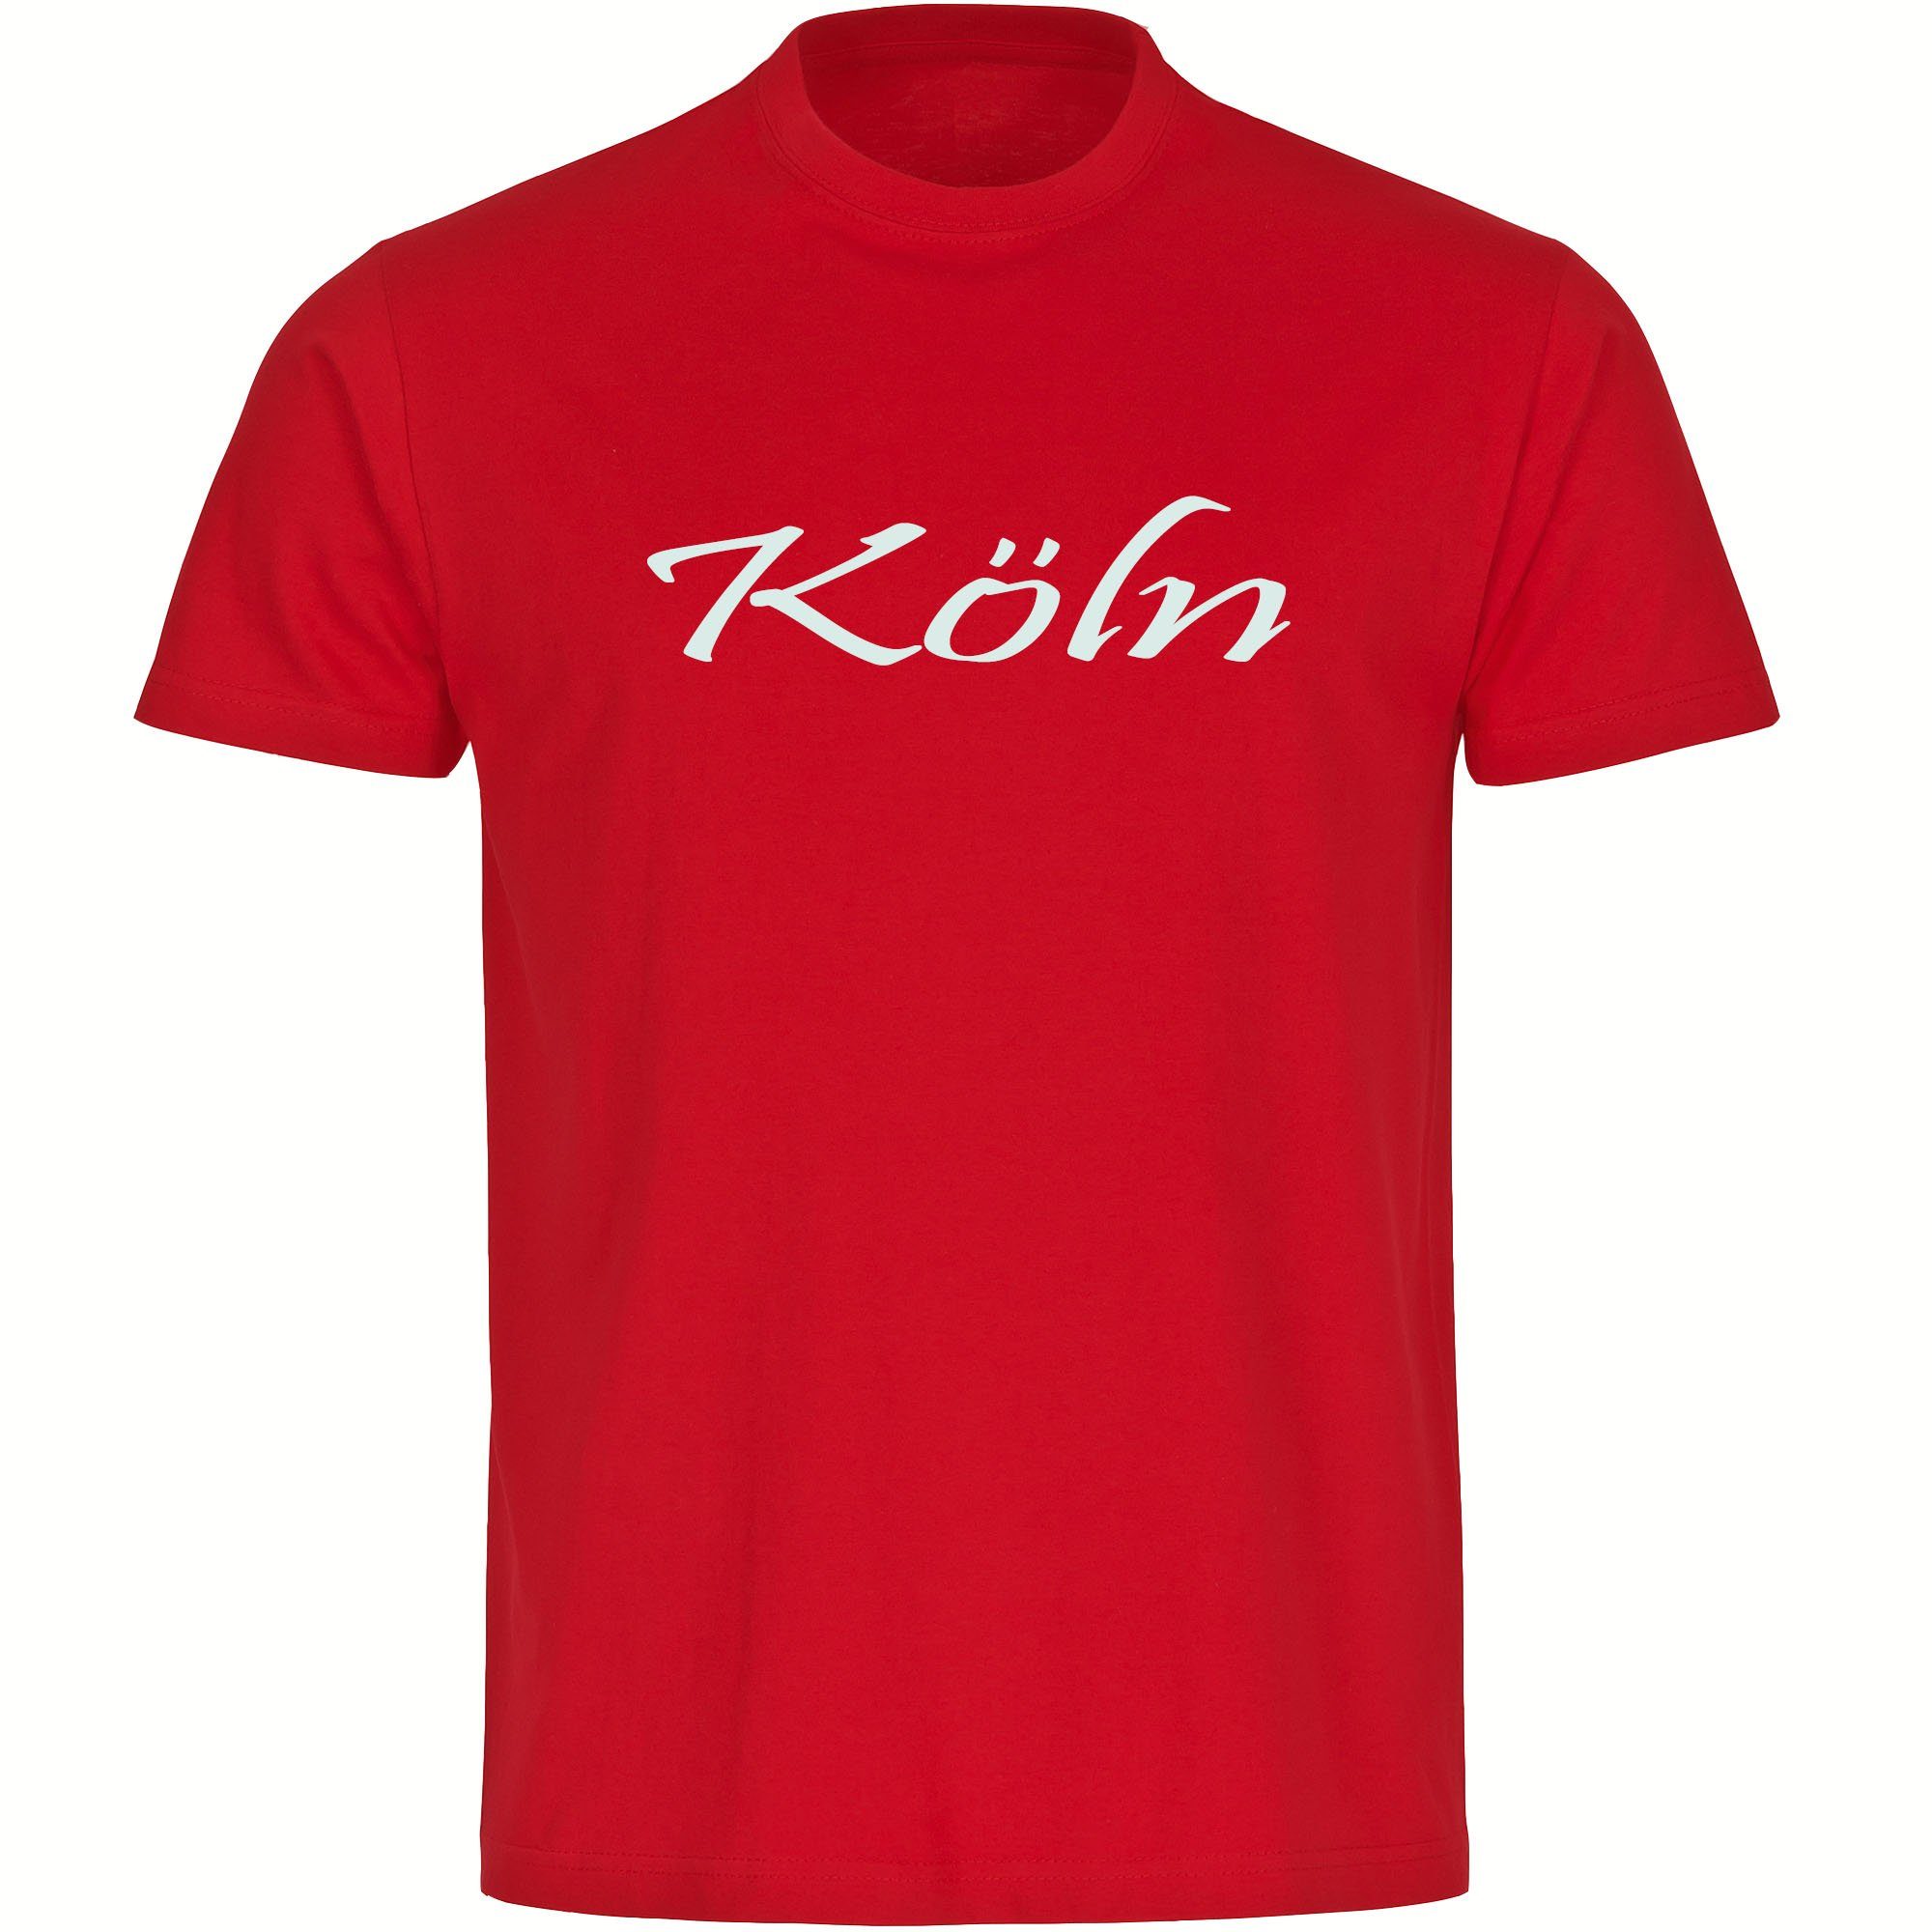 multifanshop T-Shirt Herren Köln - Schriftzug - Männer